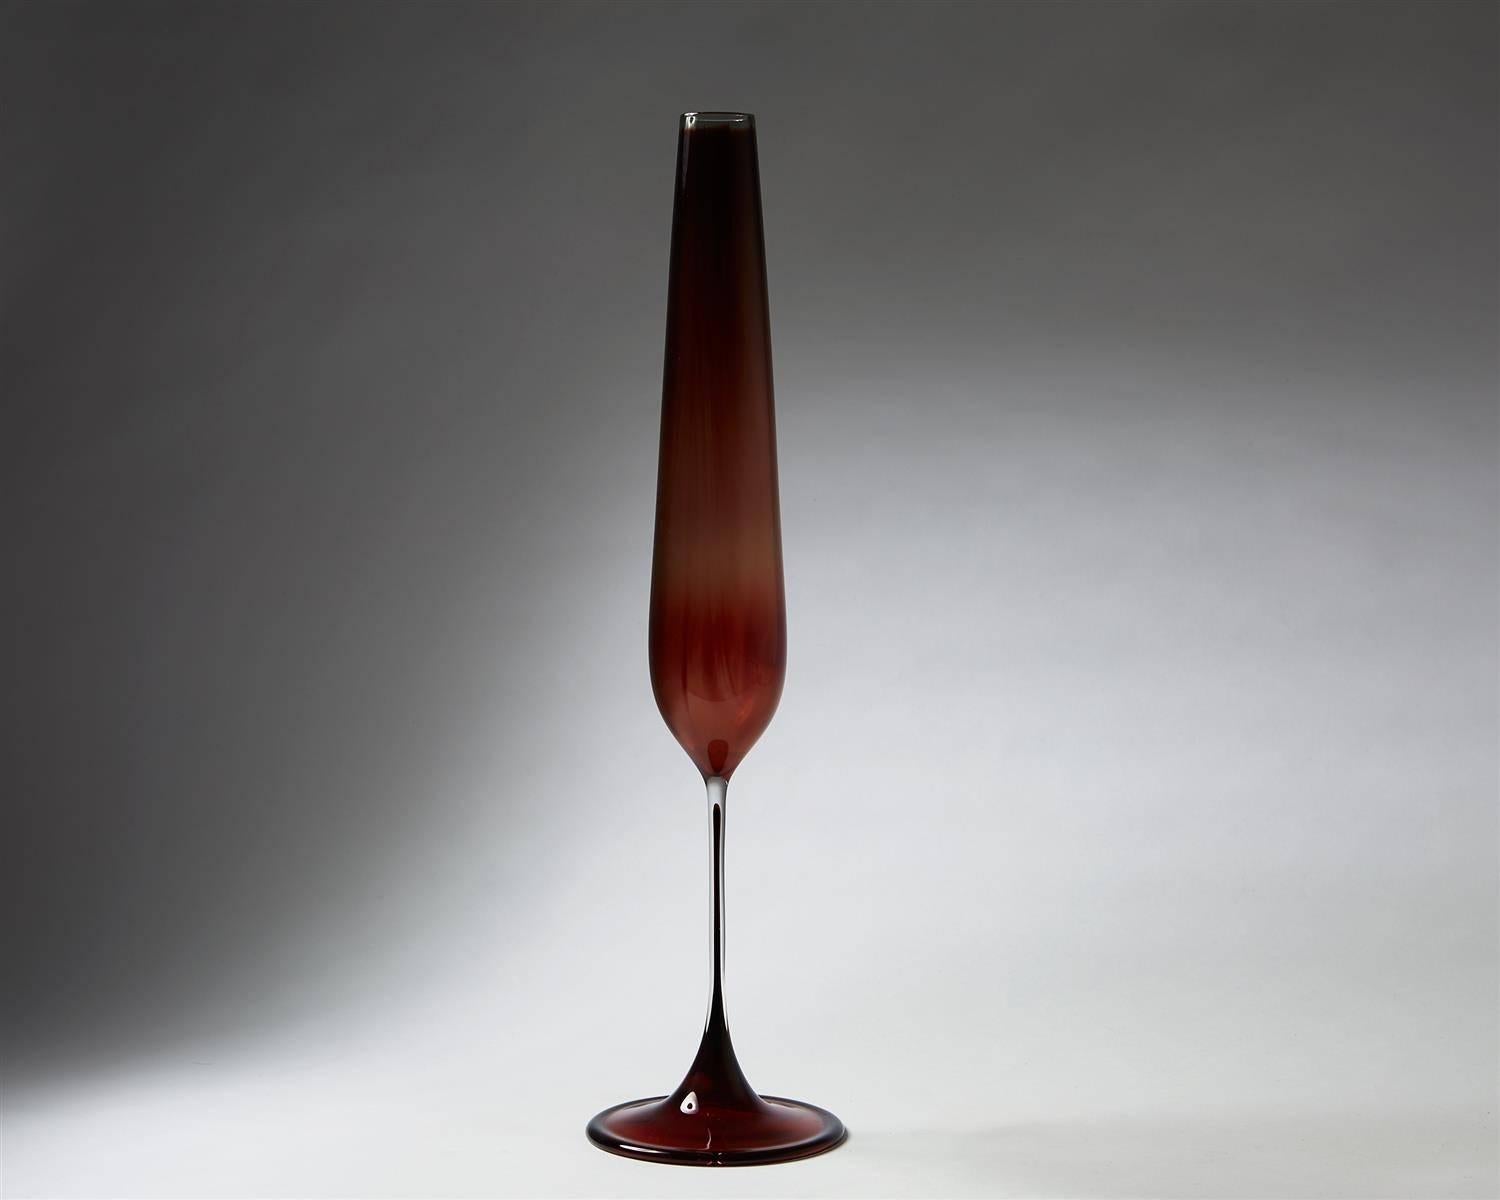 Vase, Tulip. Designed by Nils Landberg for Orrefors,
Sweden. 1957.

Glass.

Signed. 

Dimensions: 
H: 46 cm/ 18''